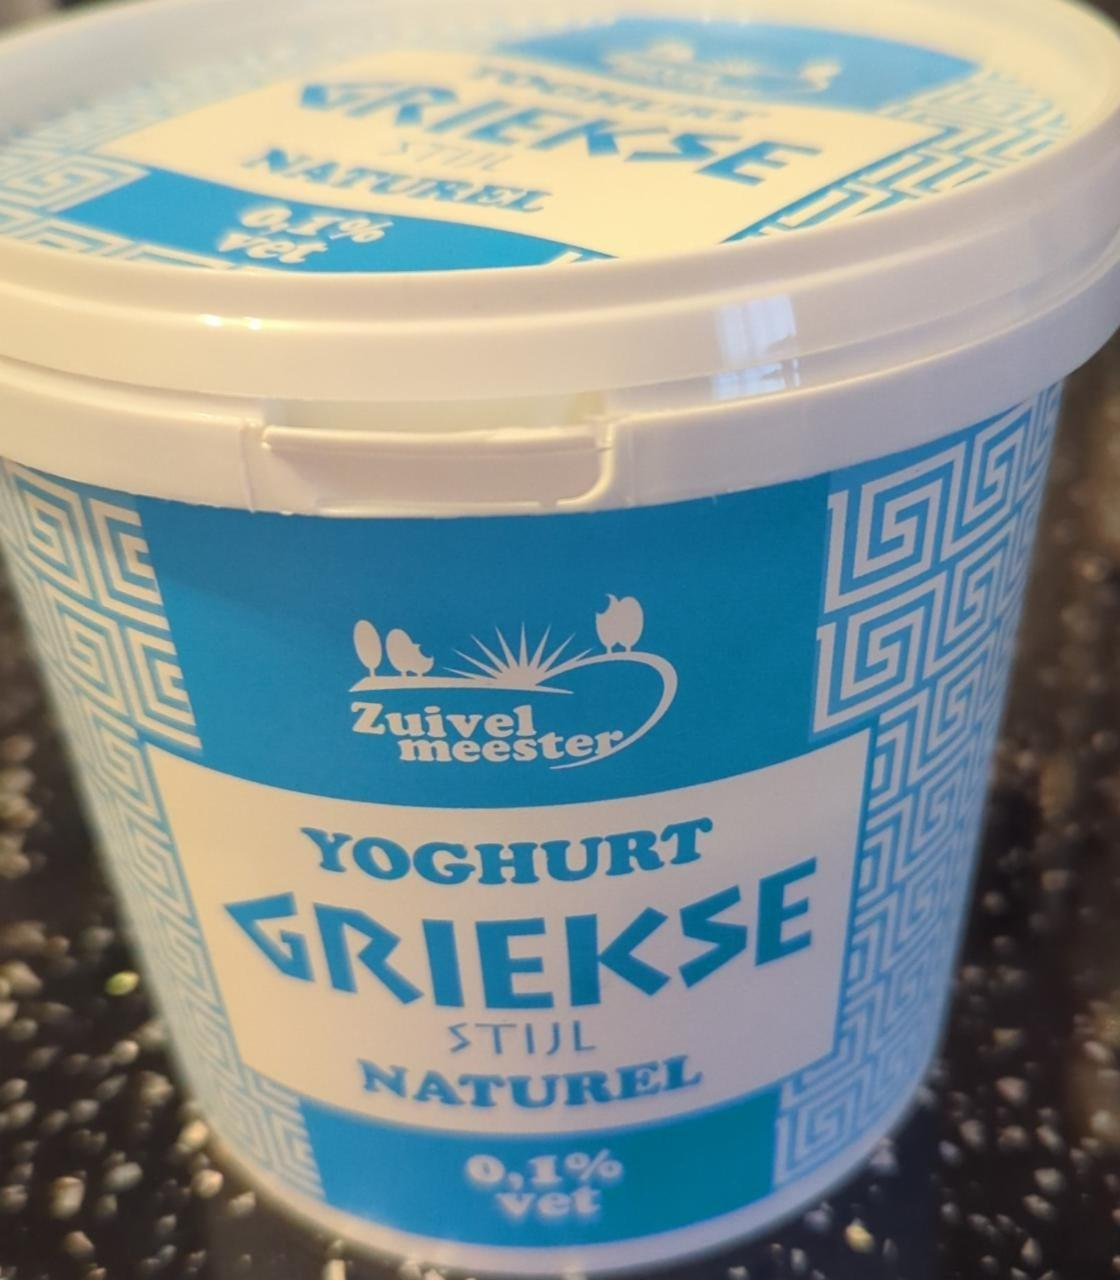 Fotografie - Yoghurt Griekse Stijl Naturel 0,1% vet Zuivel meester